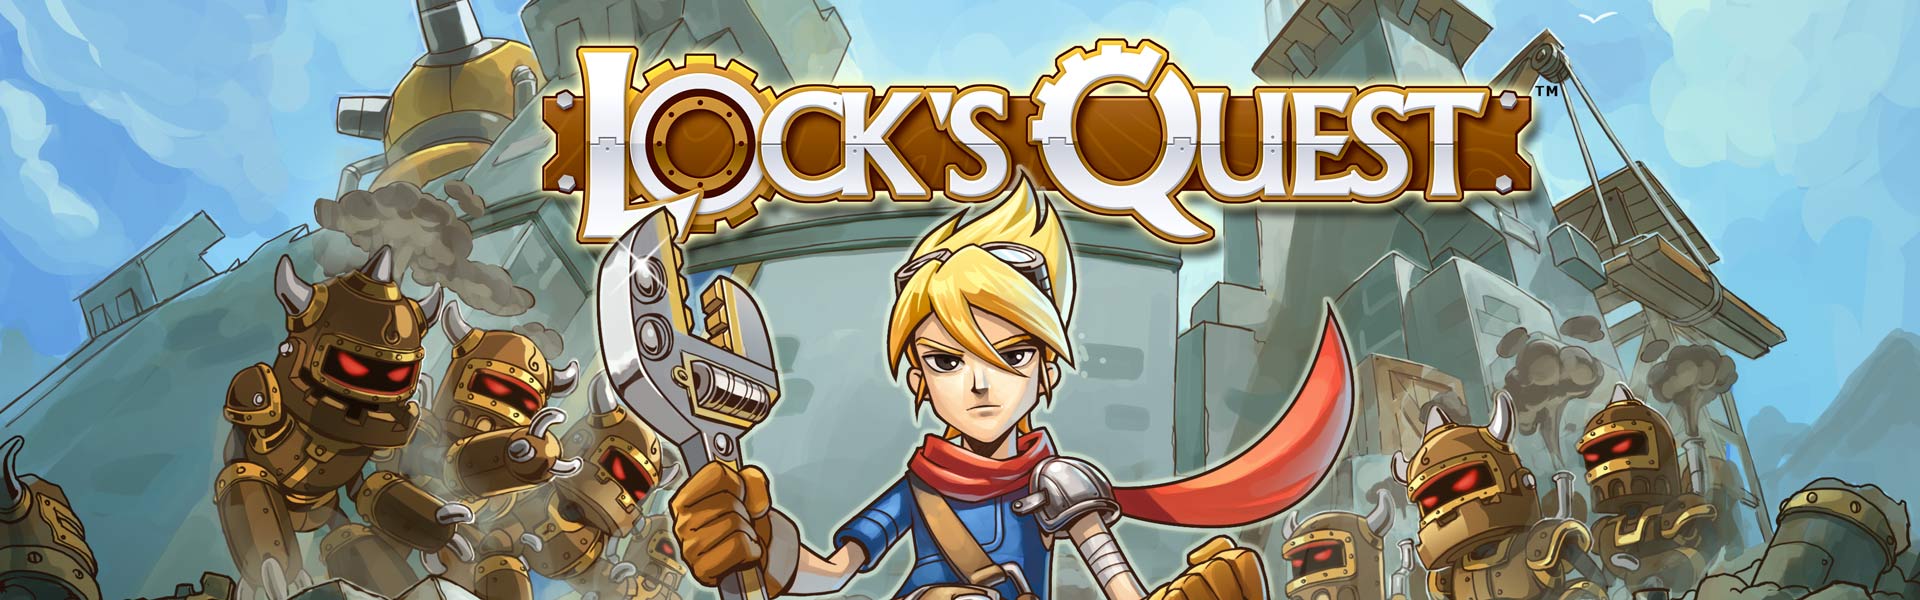 THQ Nordic anuncia la remasterización de Lock’s Quest en PS4, Xbox One y PC para abril